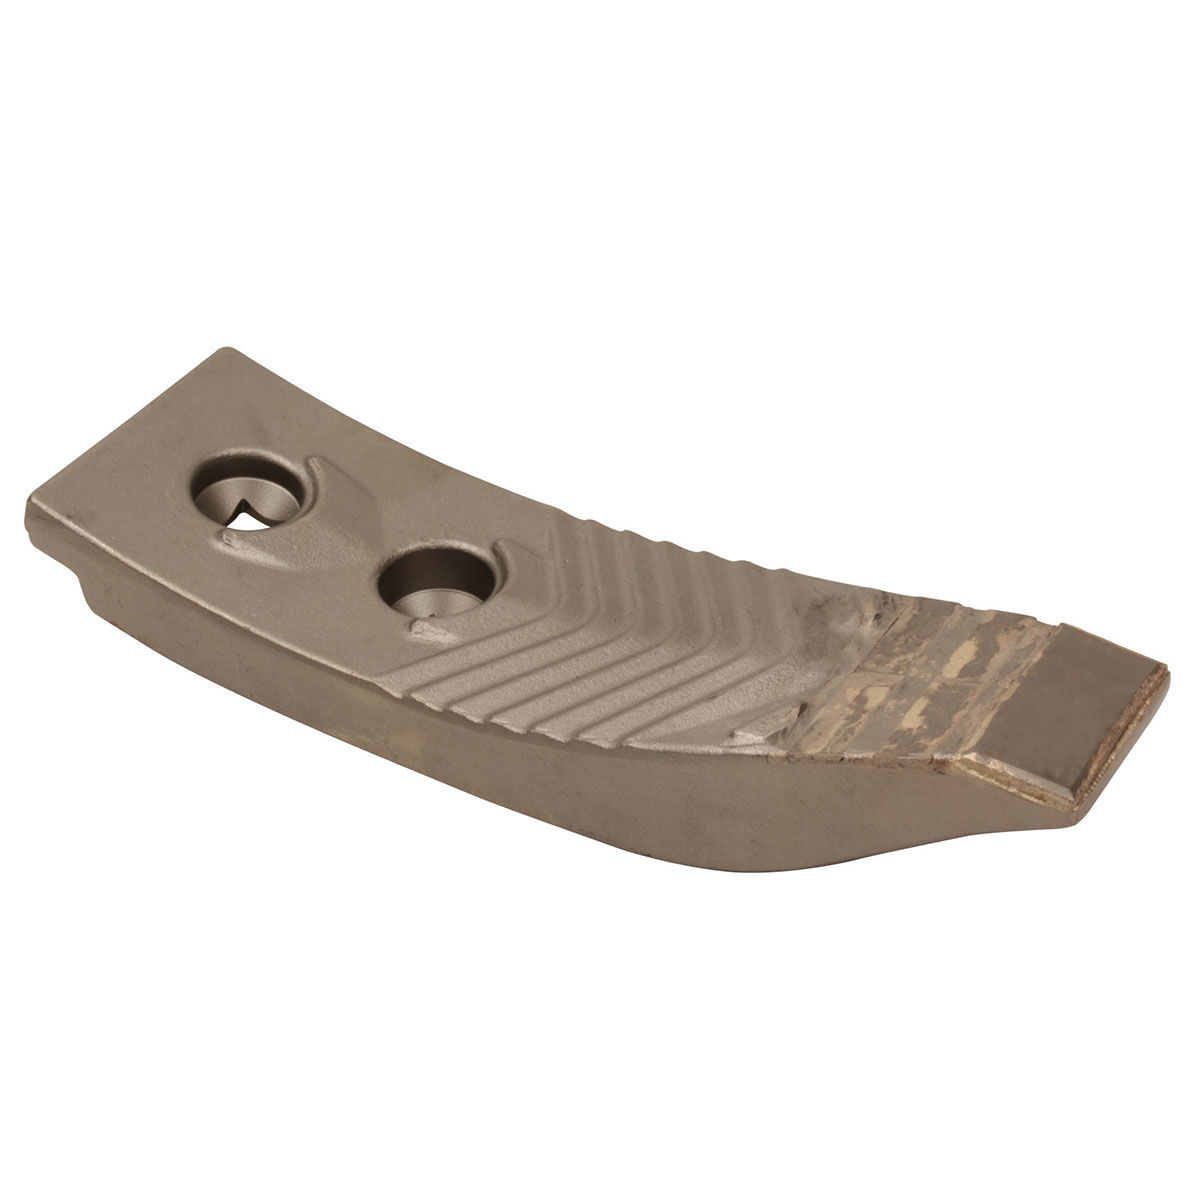 00311069 - 34060850:Horsch Tip with carbide insert